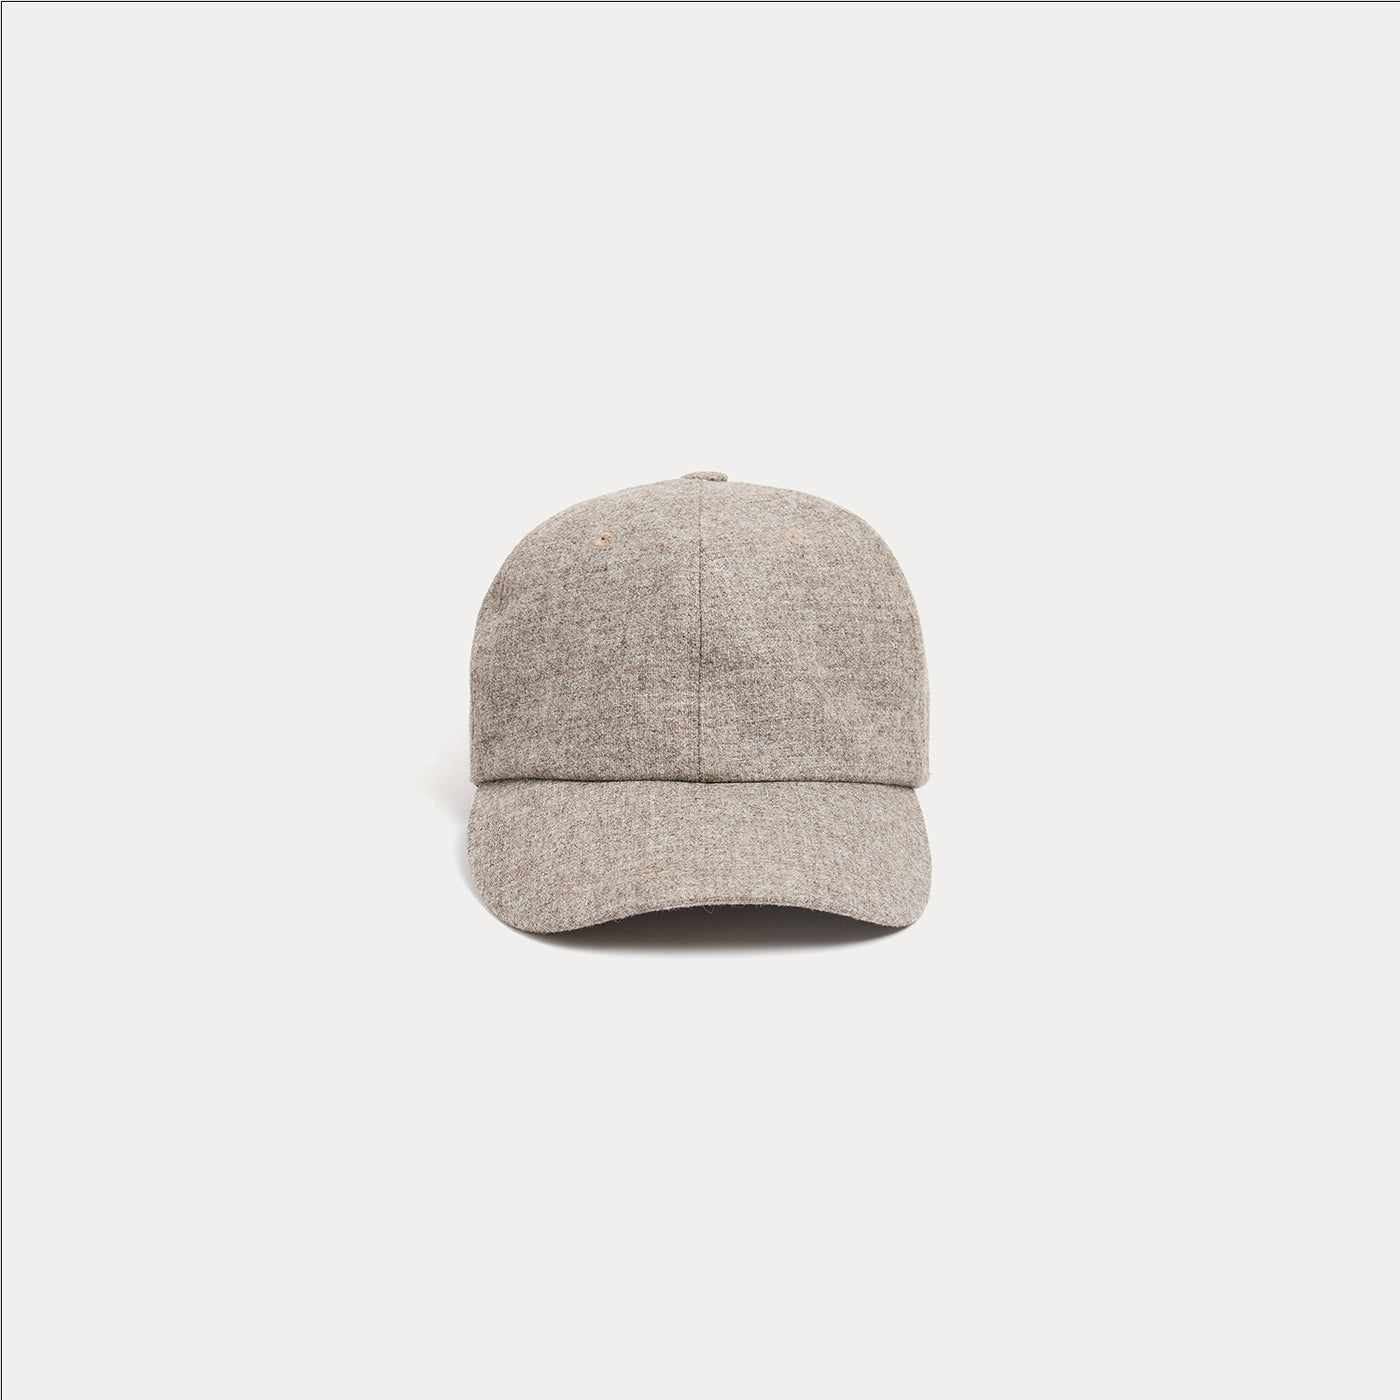 Wool cap grey